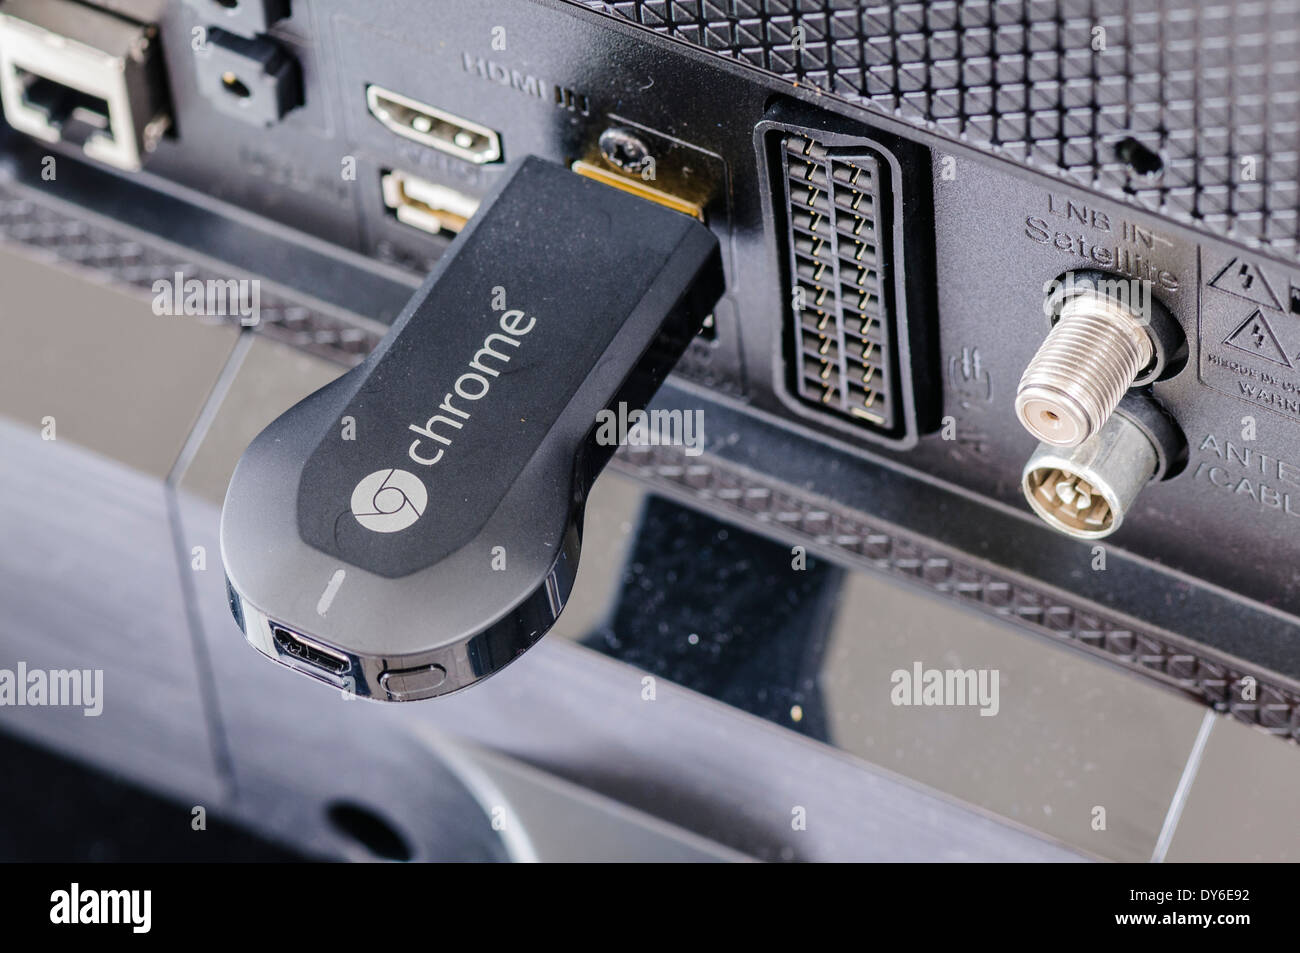 Google Chromecast dispositif de streaming TV branché sur le port HDMI de la  télévision Photo Stock - Alamy